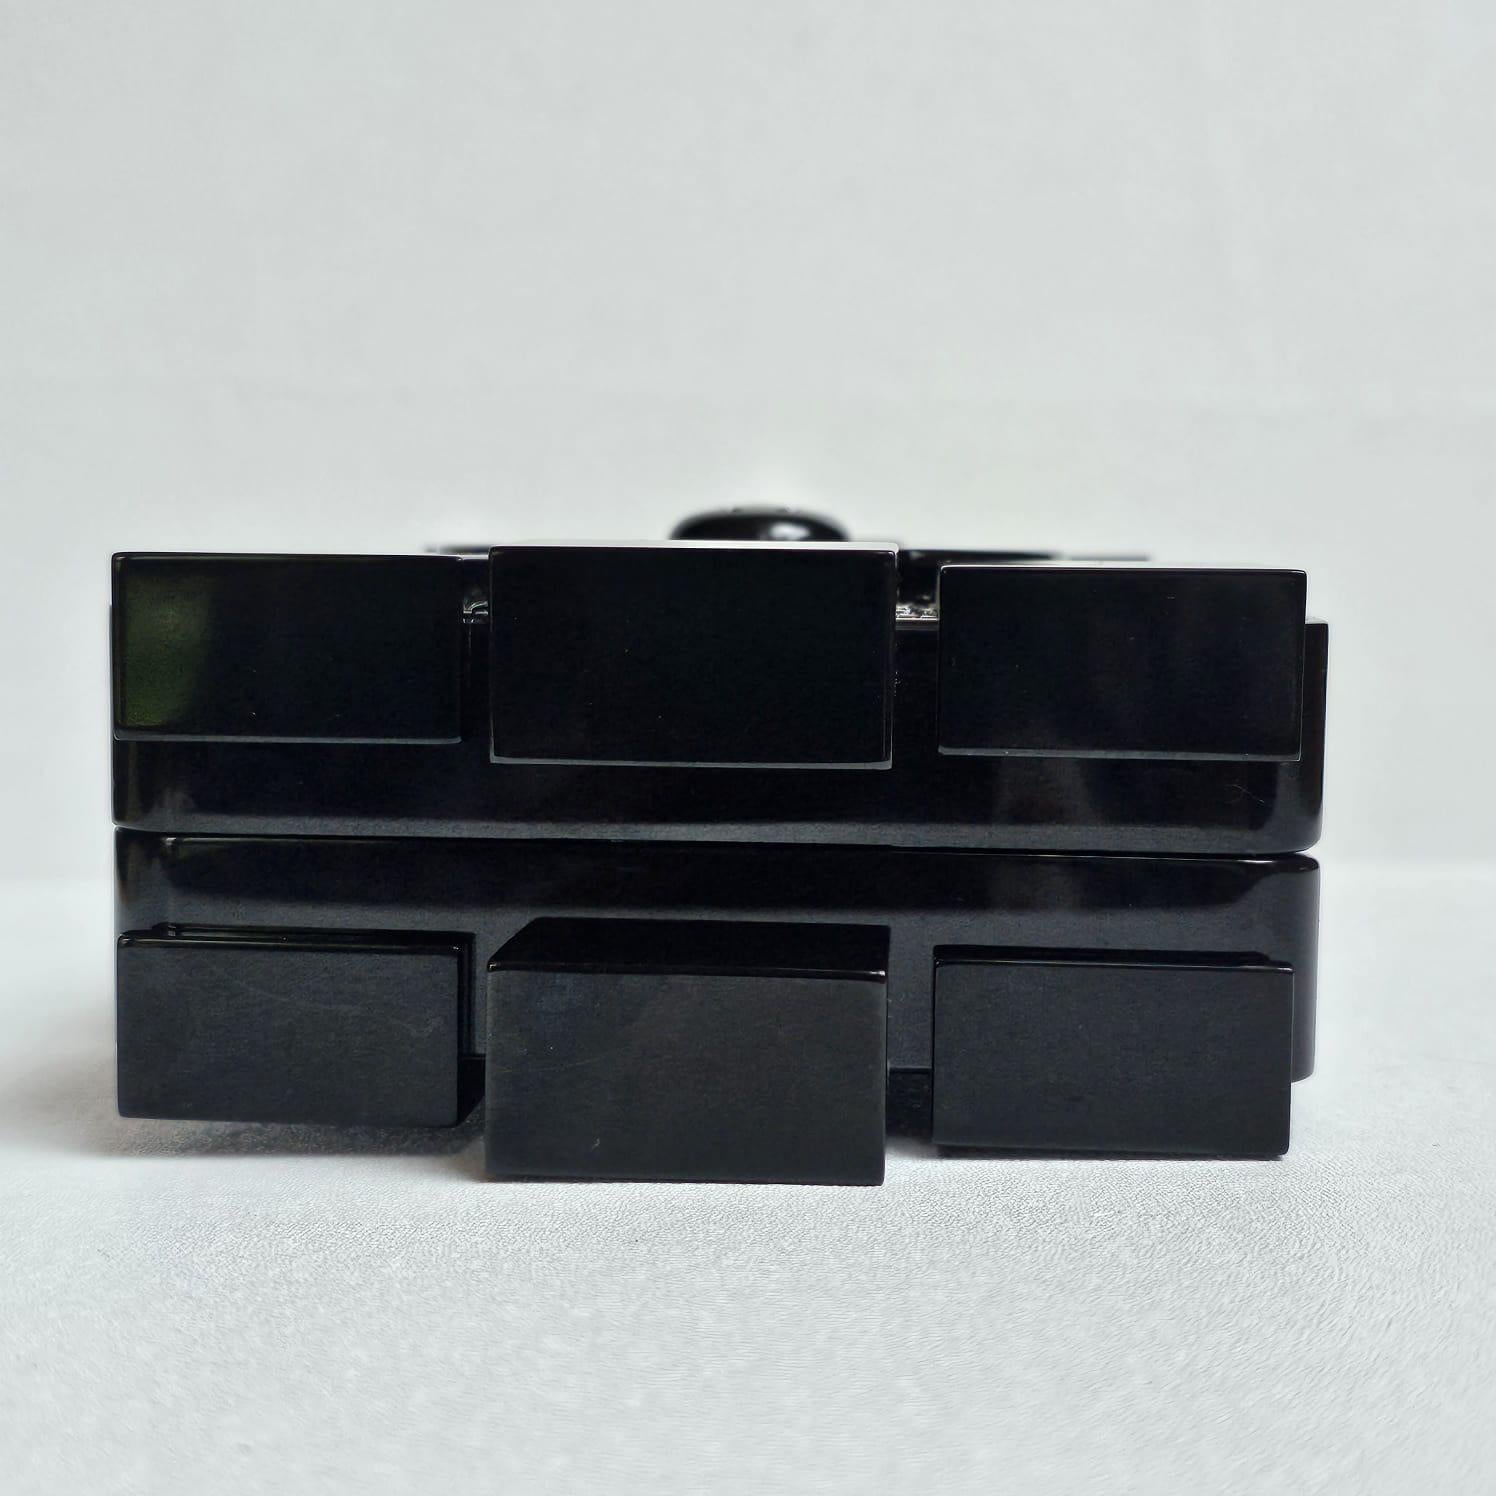 2013 Chanel Strass Crystal Lego Brick Clutch Bag 3